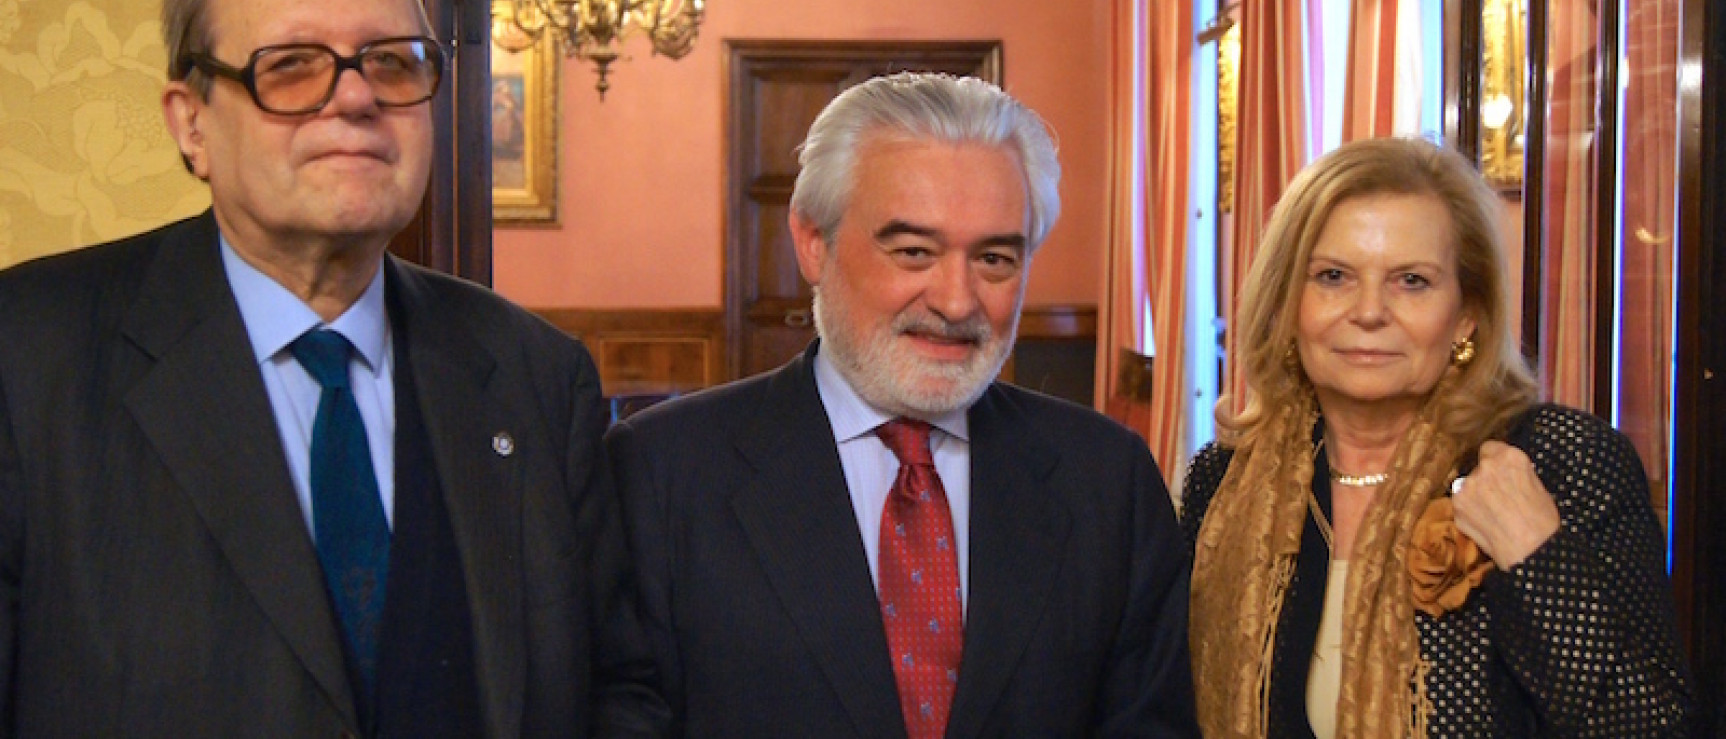 Los académicos Carme Riera y Pere Gimferrer con Darío Villanueva.